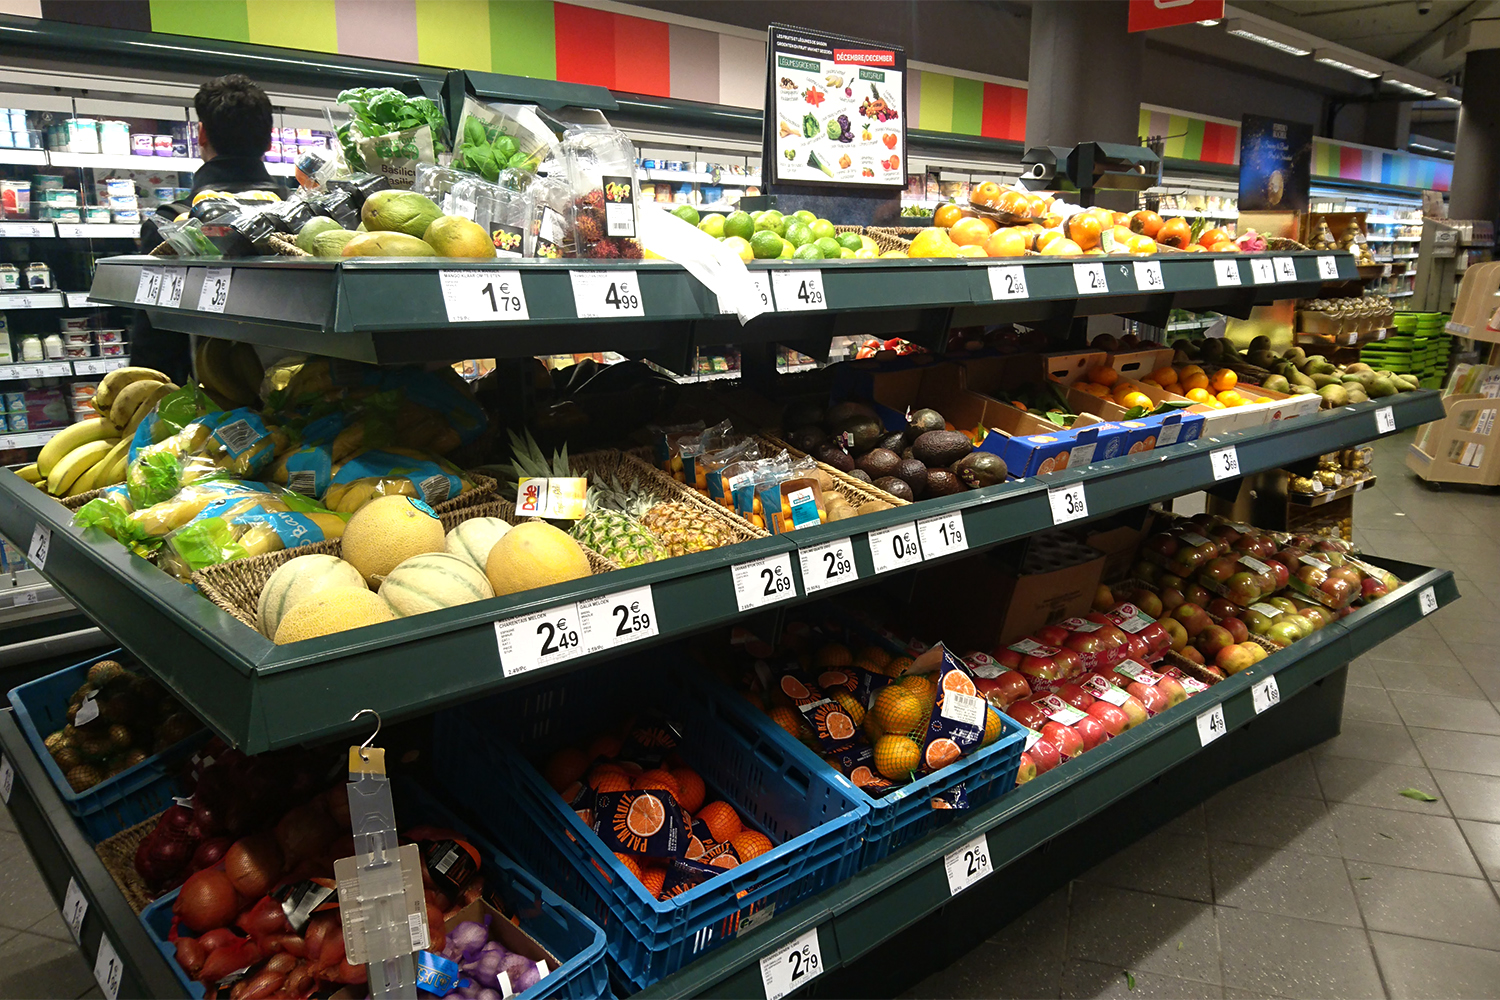 Au sein de l’UE, la loi stipule que les aliments d’origine OGM doivent être étiquetés pour informer le consommateur